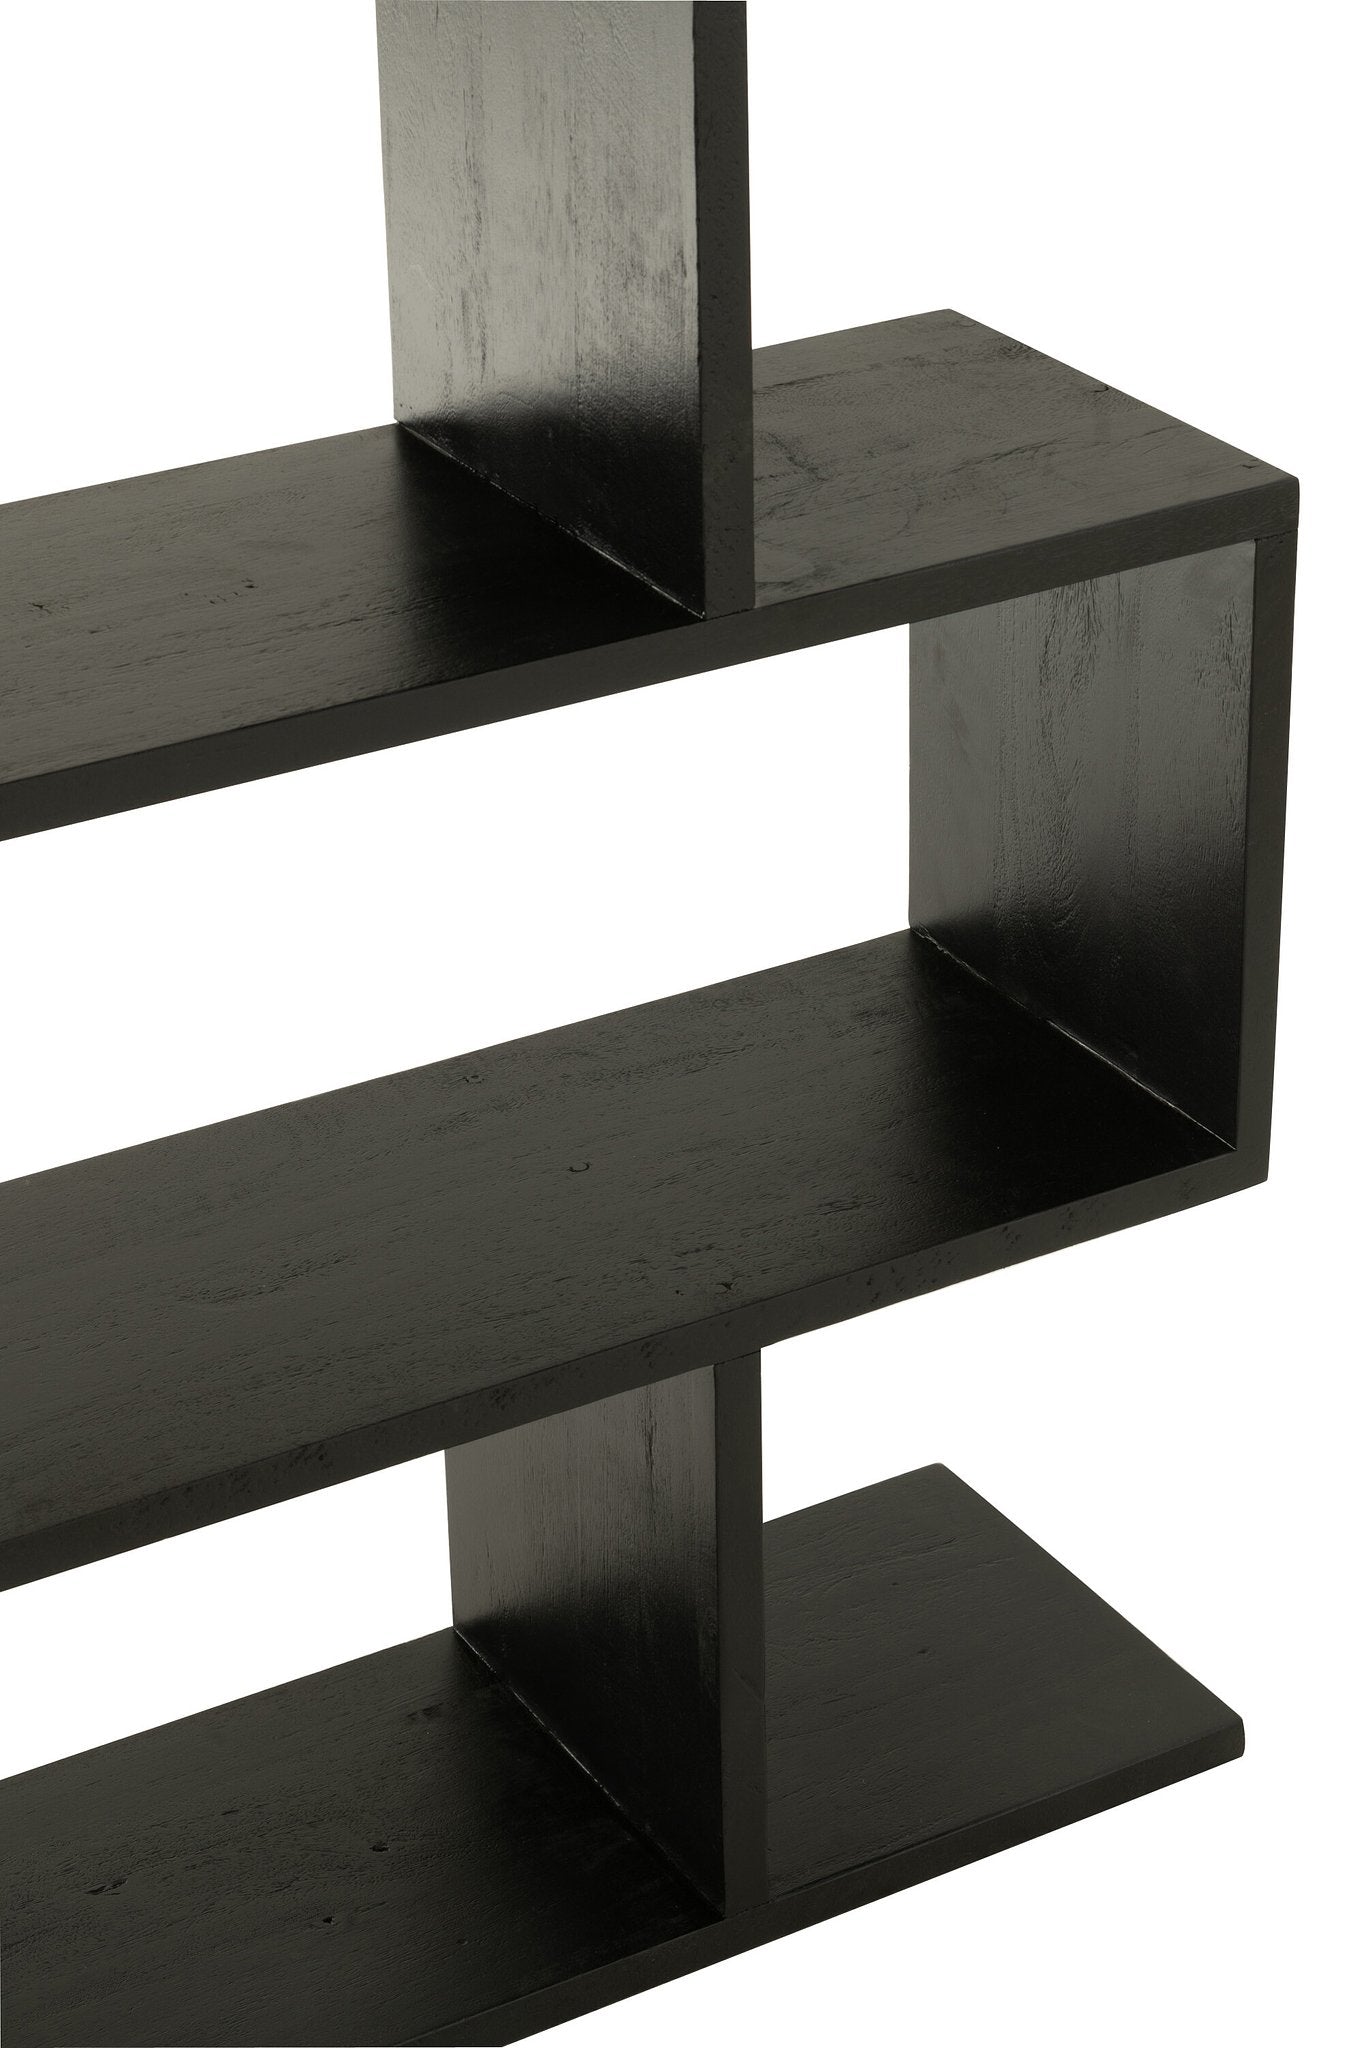 J-Line boekenkast Verticaal Latten - hout - zwart